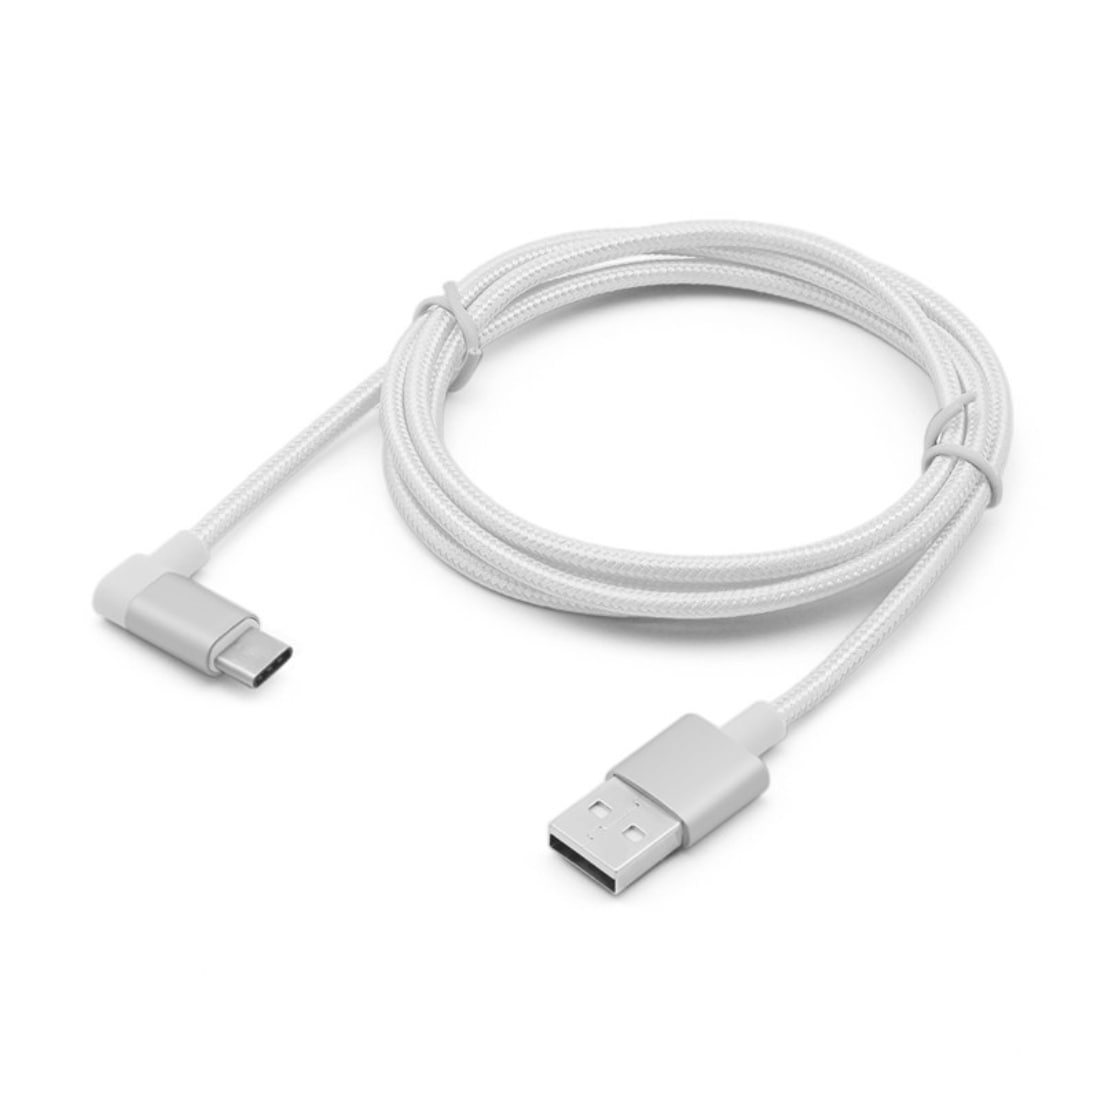 Laddkabel / usbkabel / datakabel USB 3.1 Typ-C USB 2.0